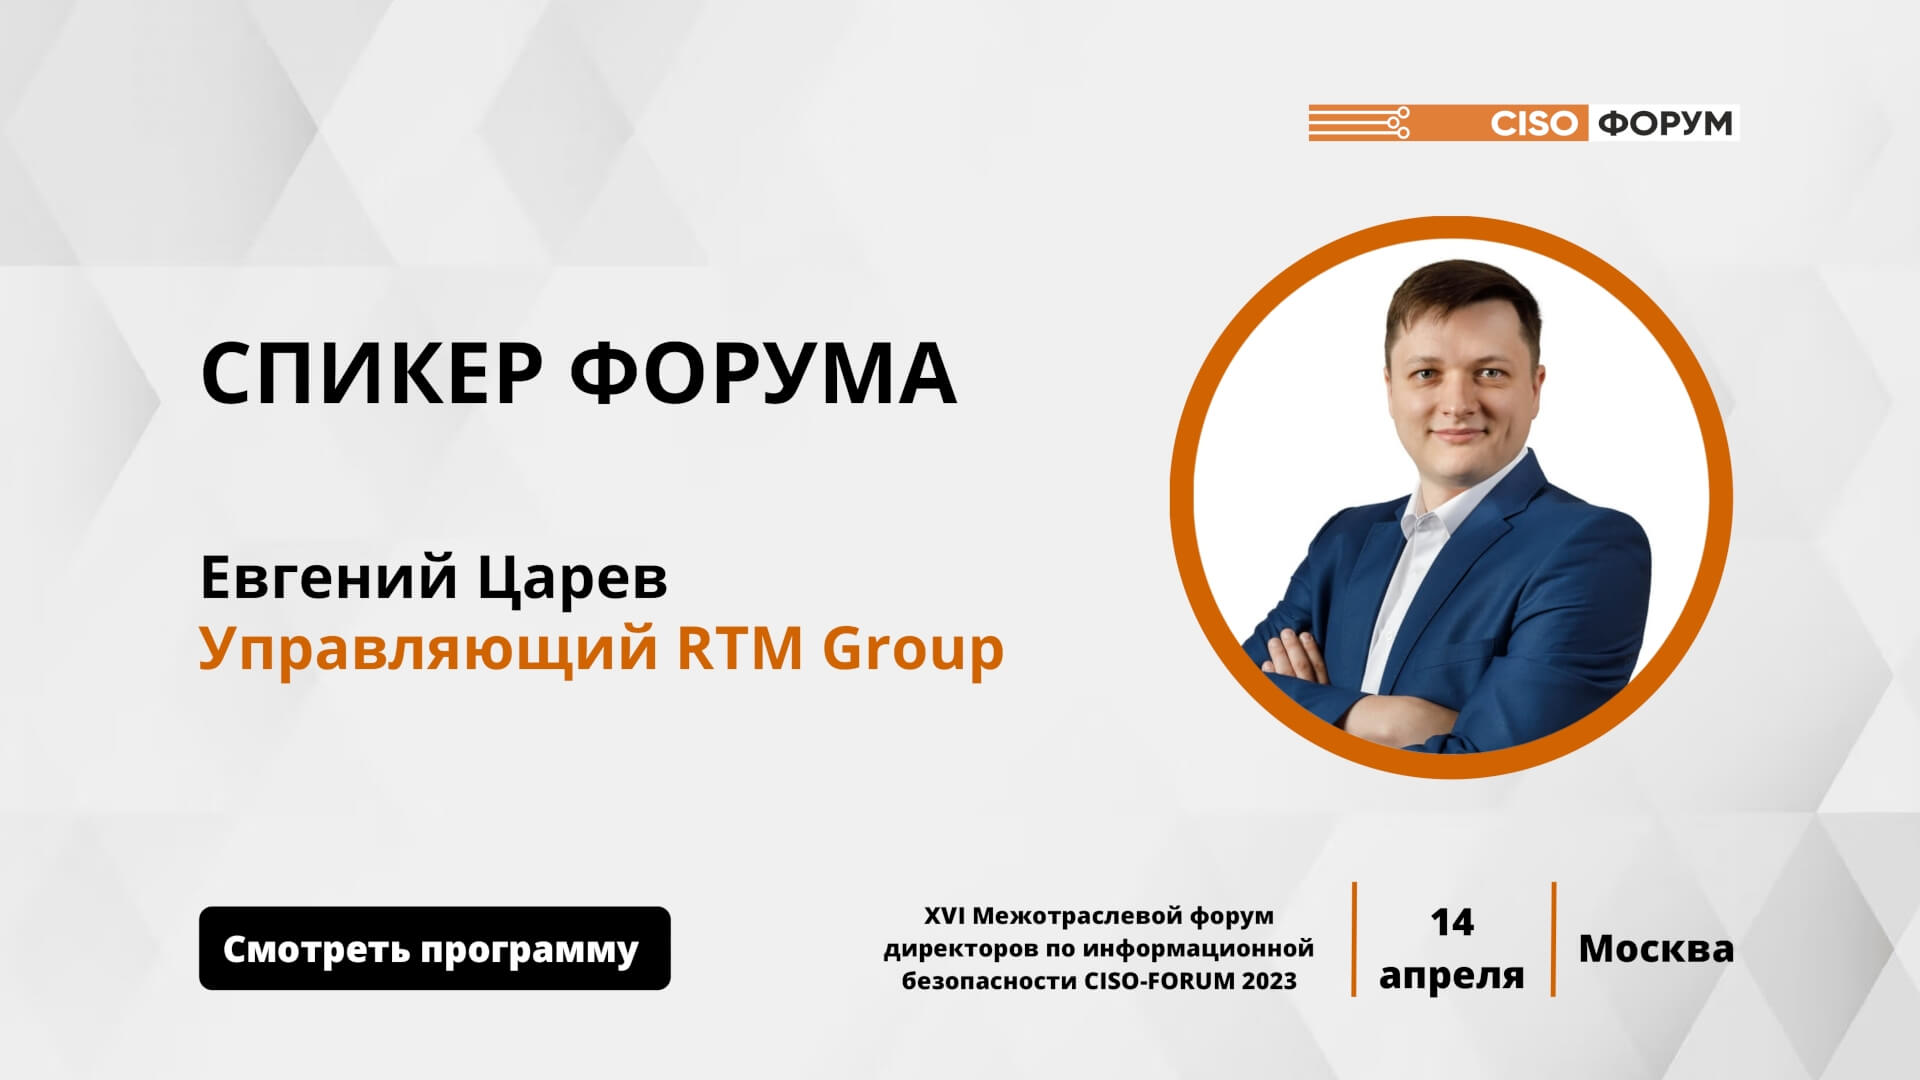 Евгений Царев, управляющий RTM Group, выступит на CISO Forum